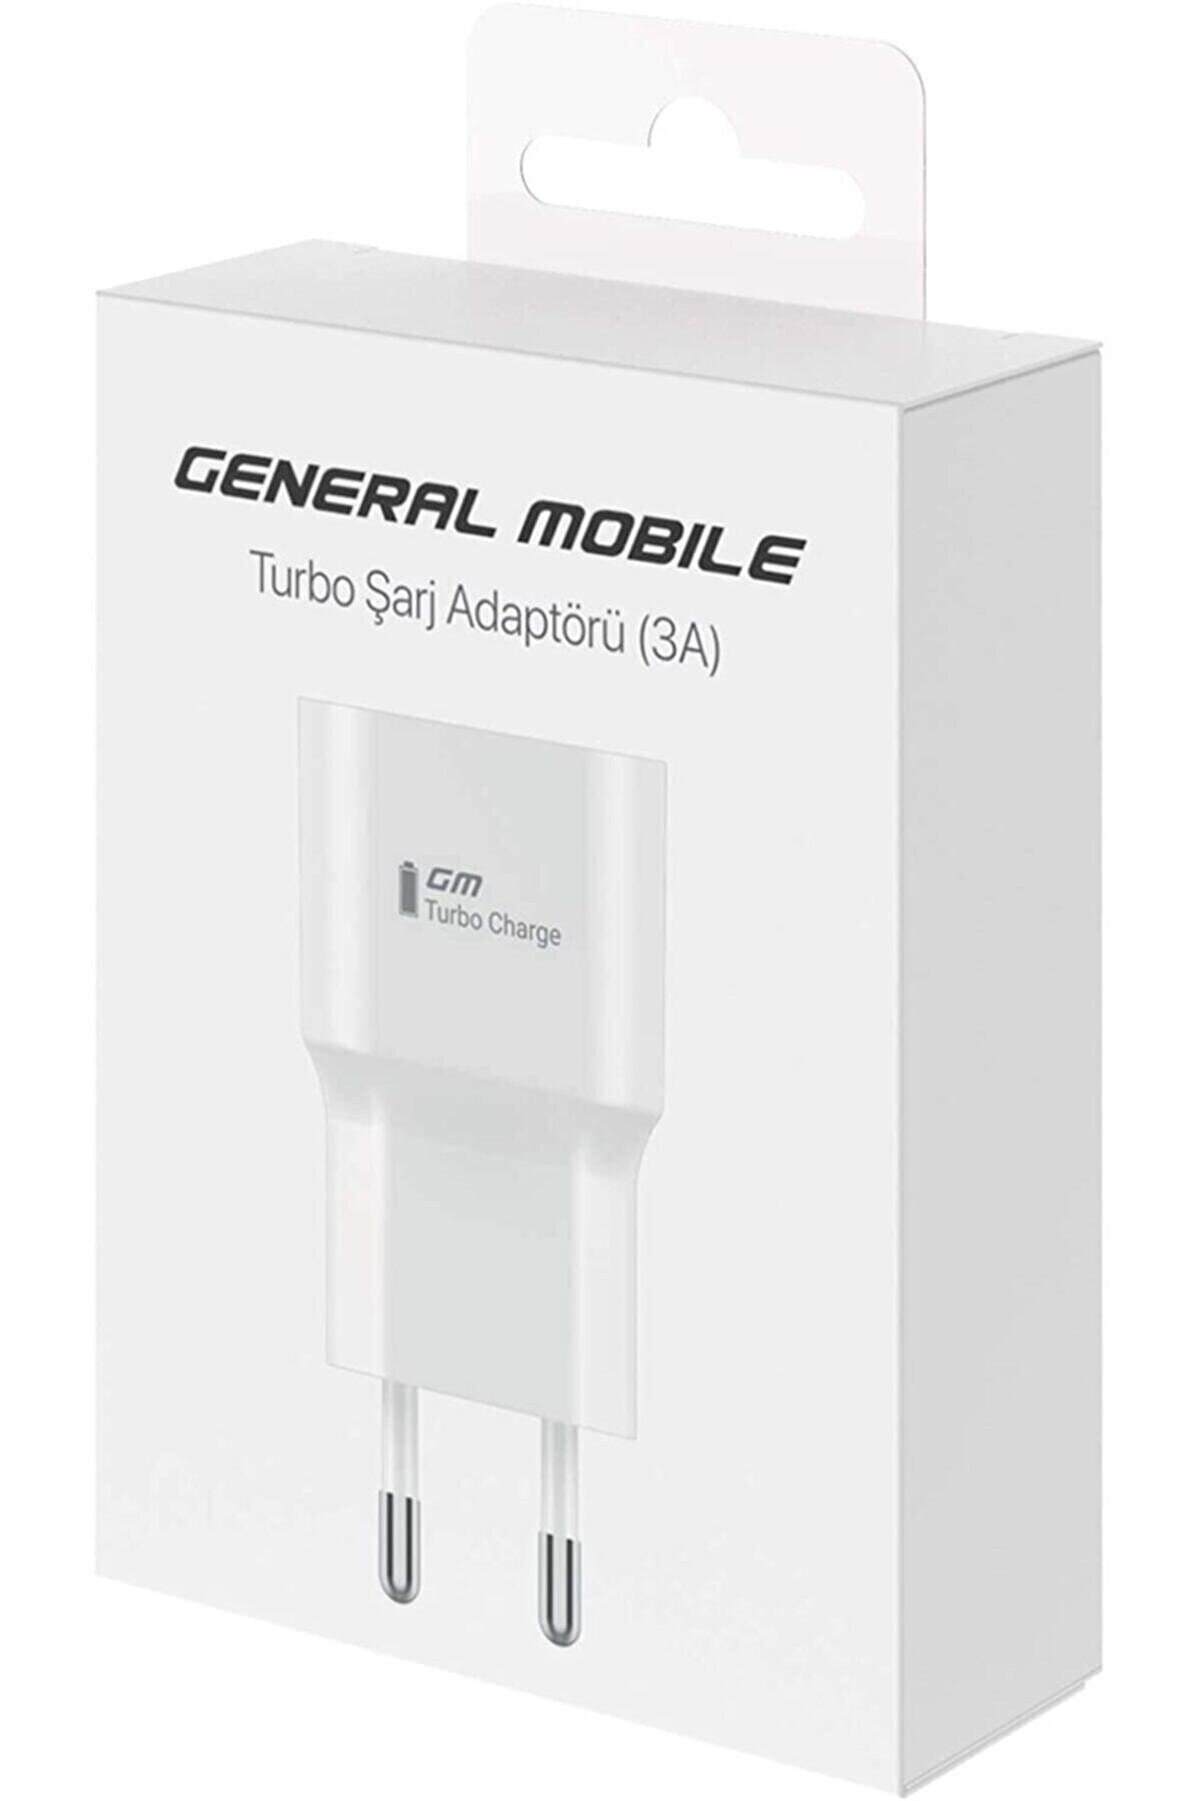 General Mobile 15 W, 3 A Turbo Şarj Adaptörü-kutulu (telpa)